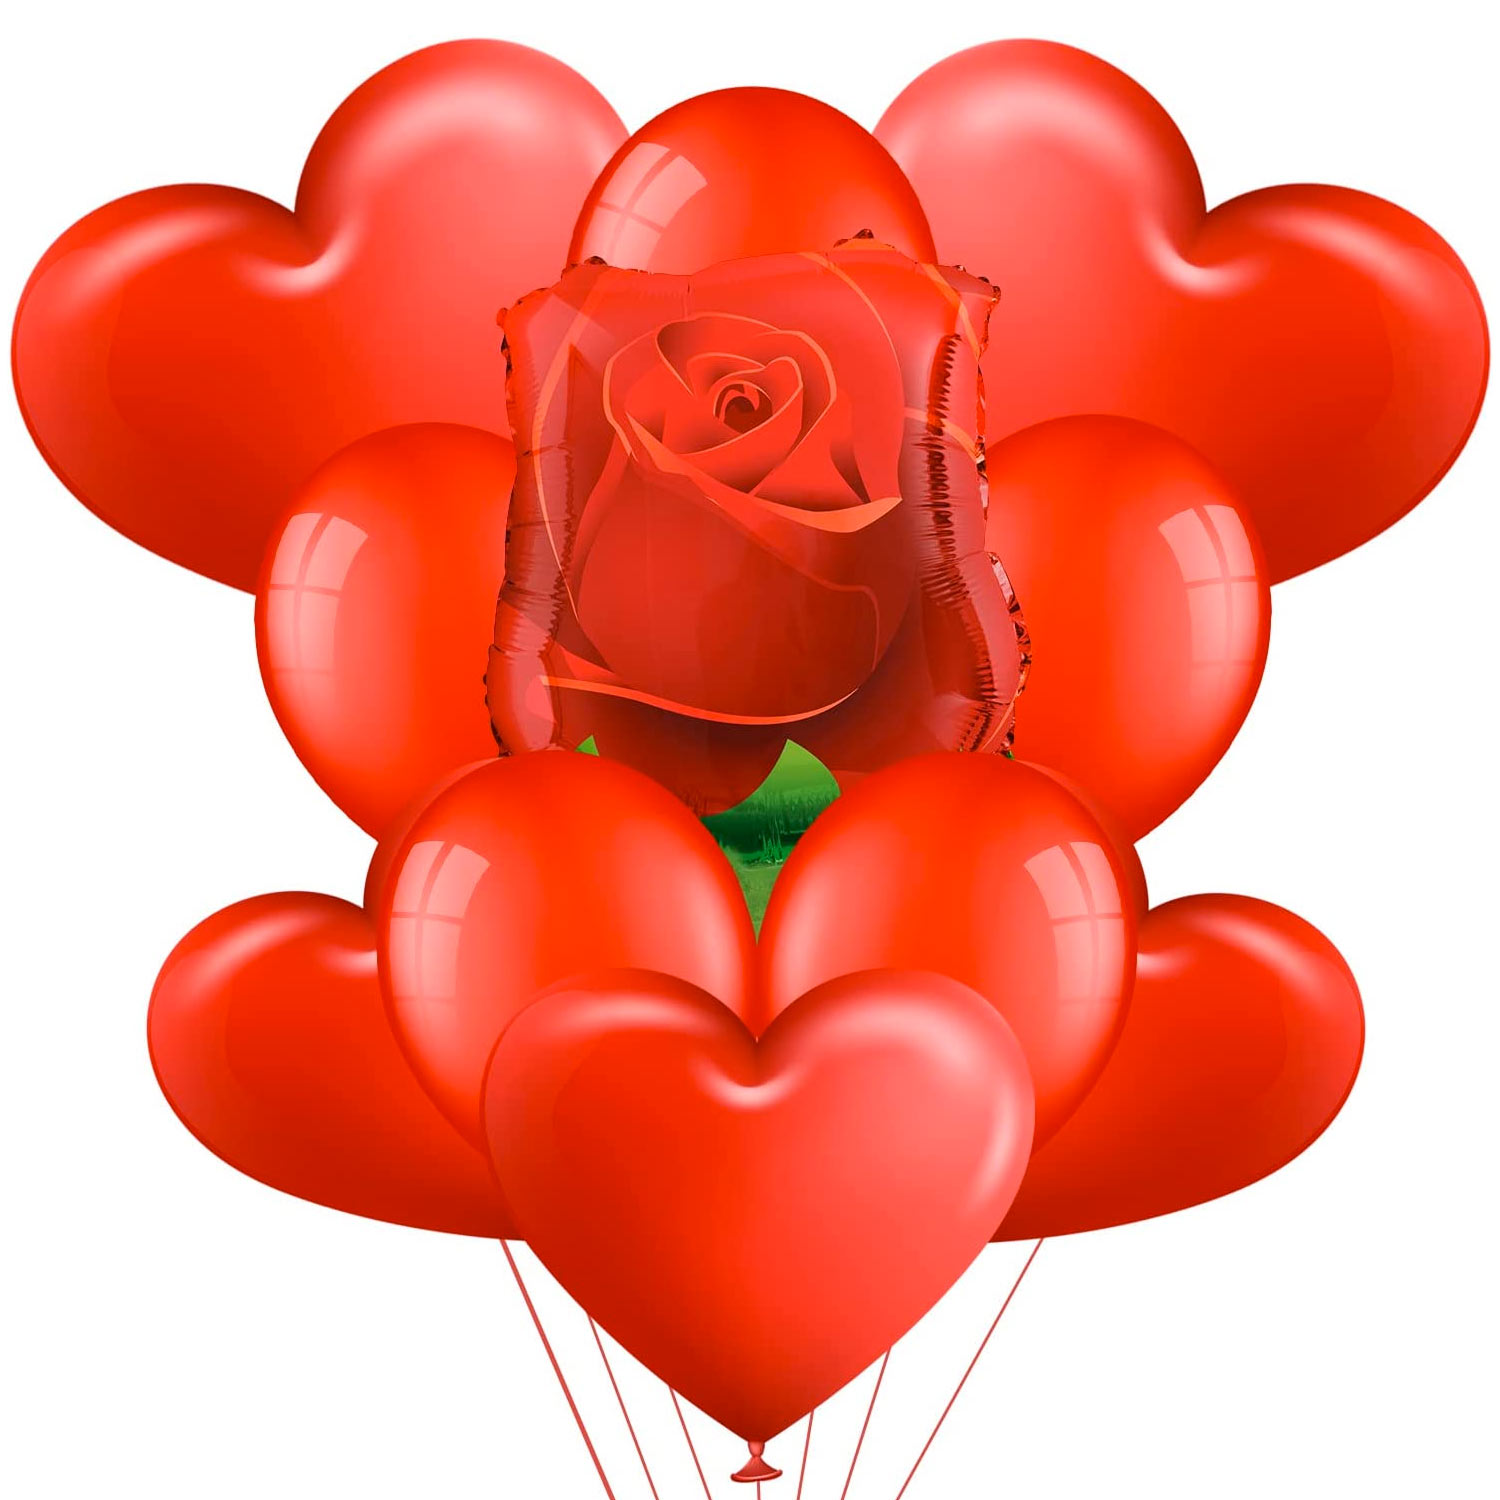 Kit bouquet di palloncini con rosa rossa xxl decorazione romantica.